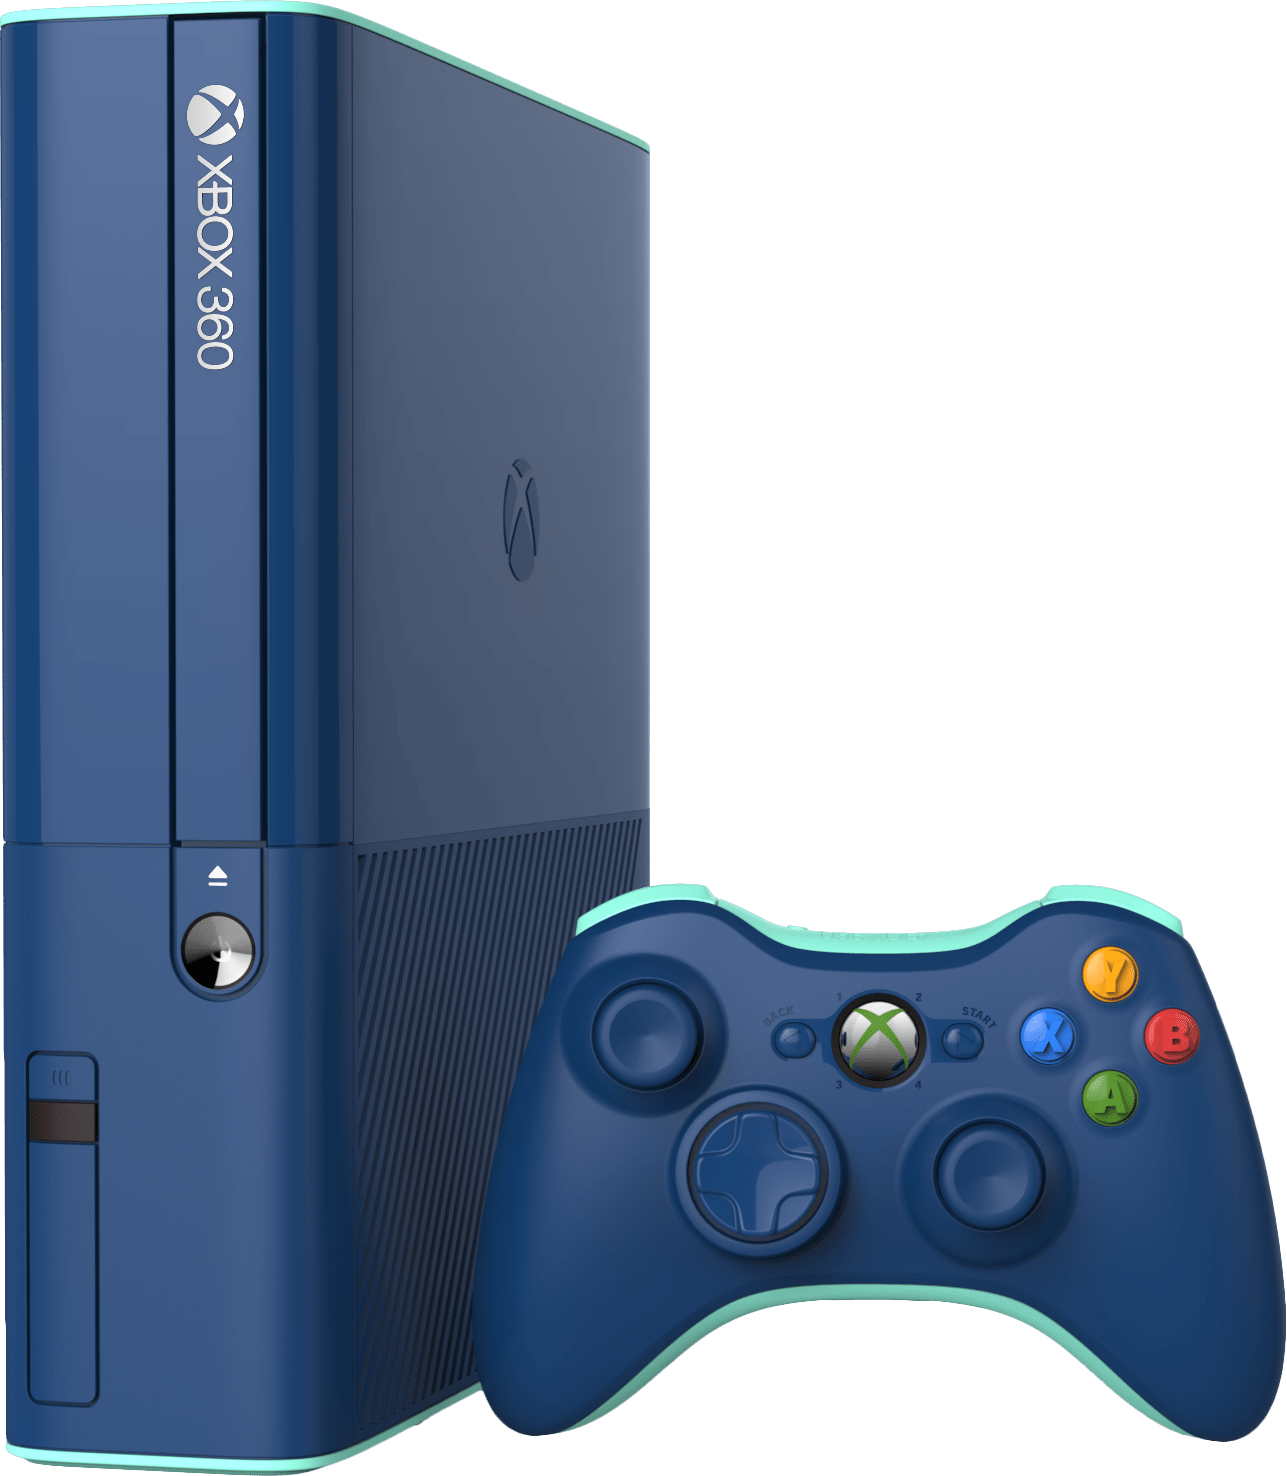 Consola Xbox 360 E edición especial azul/verde azulado de 500 GB [importación europea] (Xbox 360)